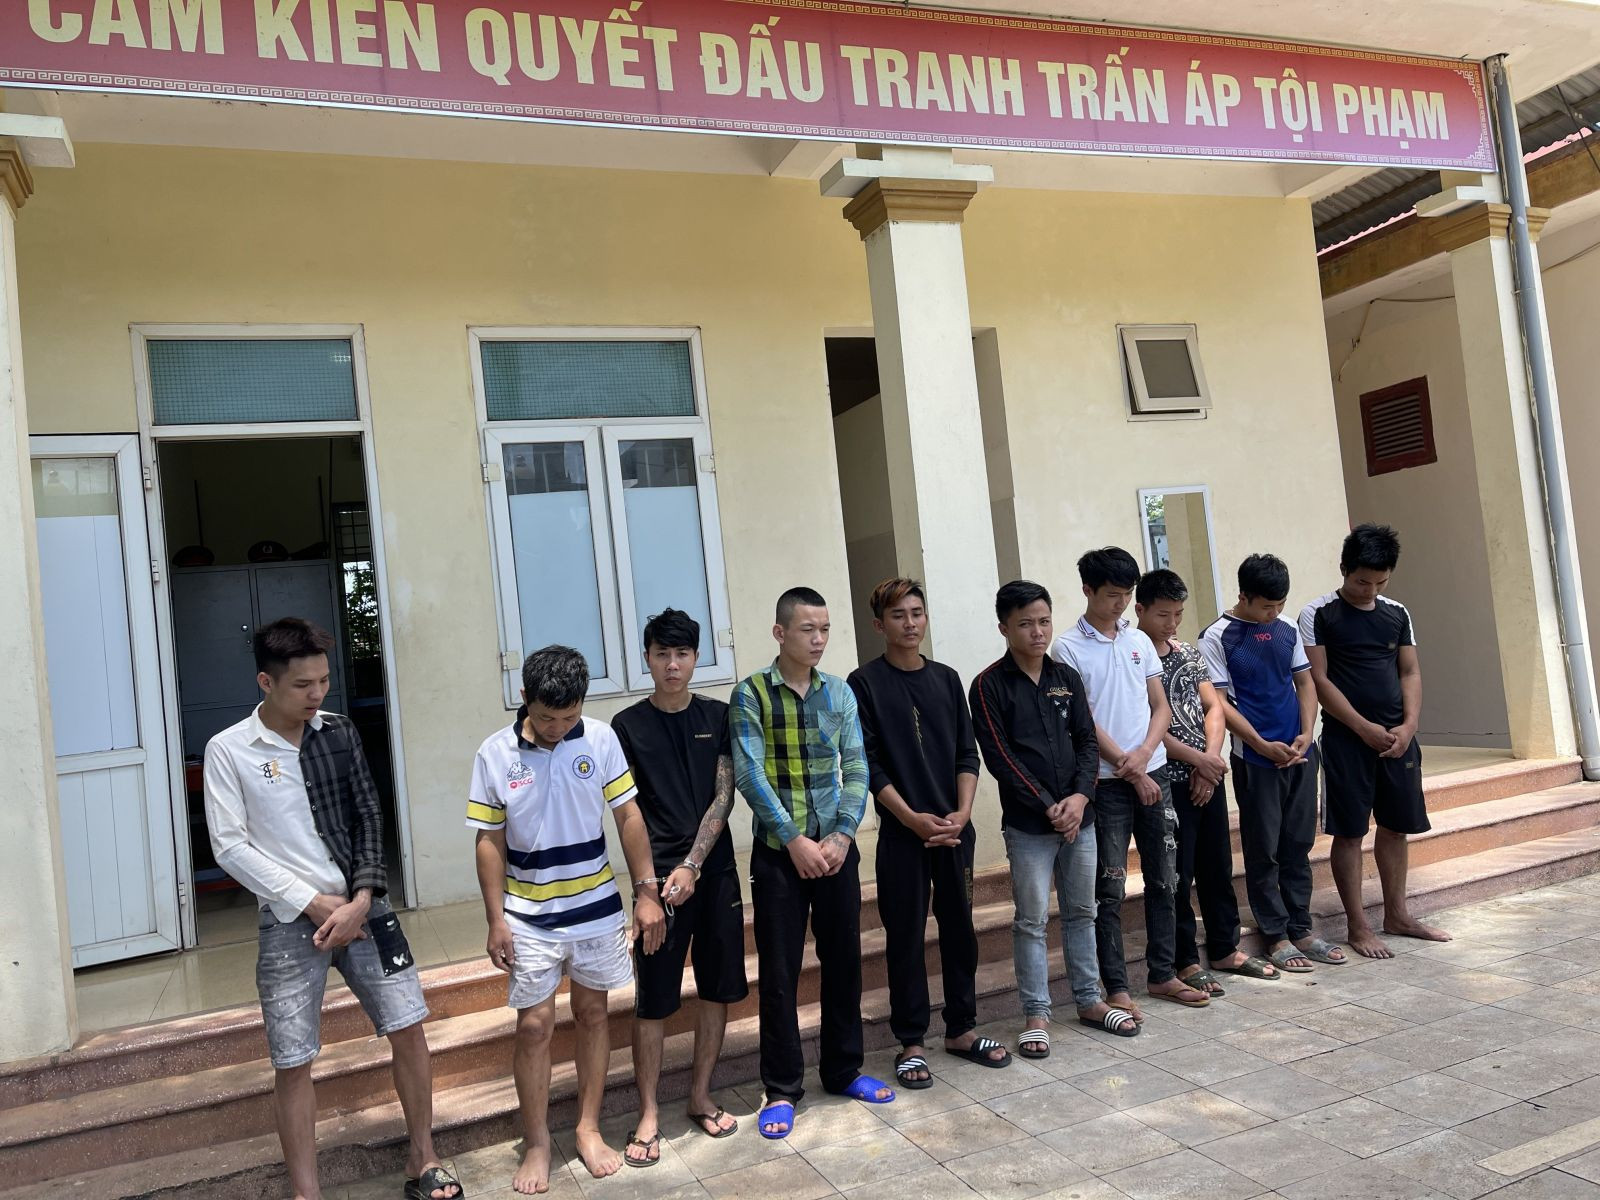 Các thanh niên sử dụng, tàng trữ trái phép chất ma túy tại xóm trọ ở huyện Trriệu Sơn (Thanh Hóa).